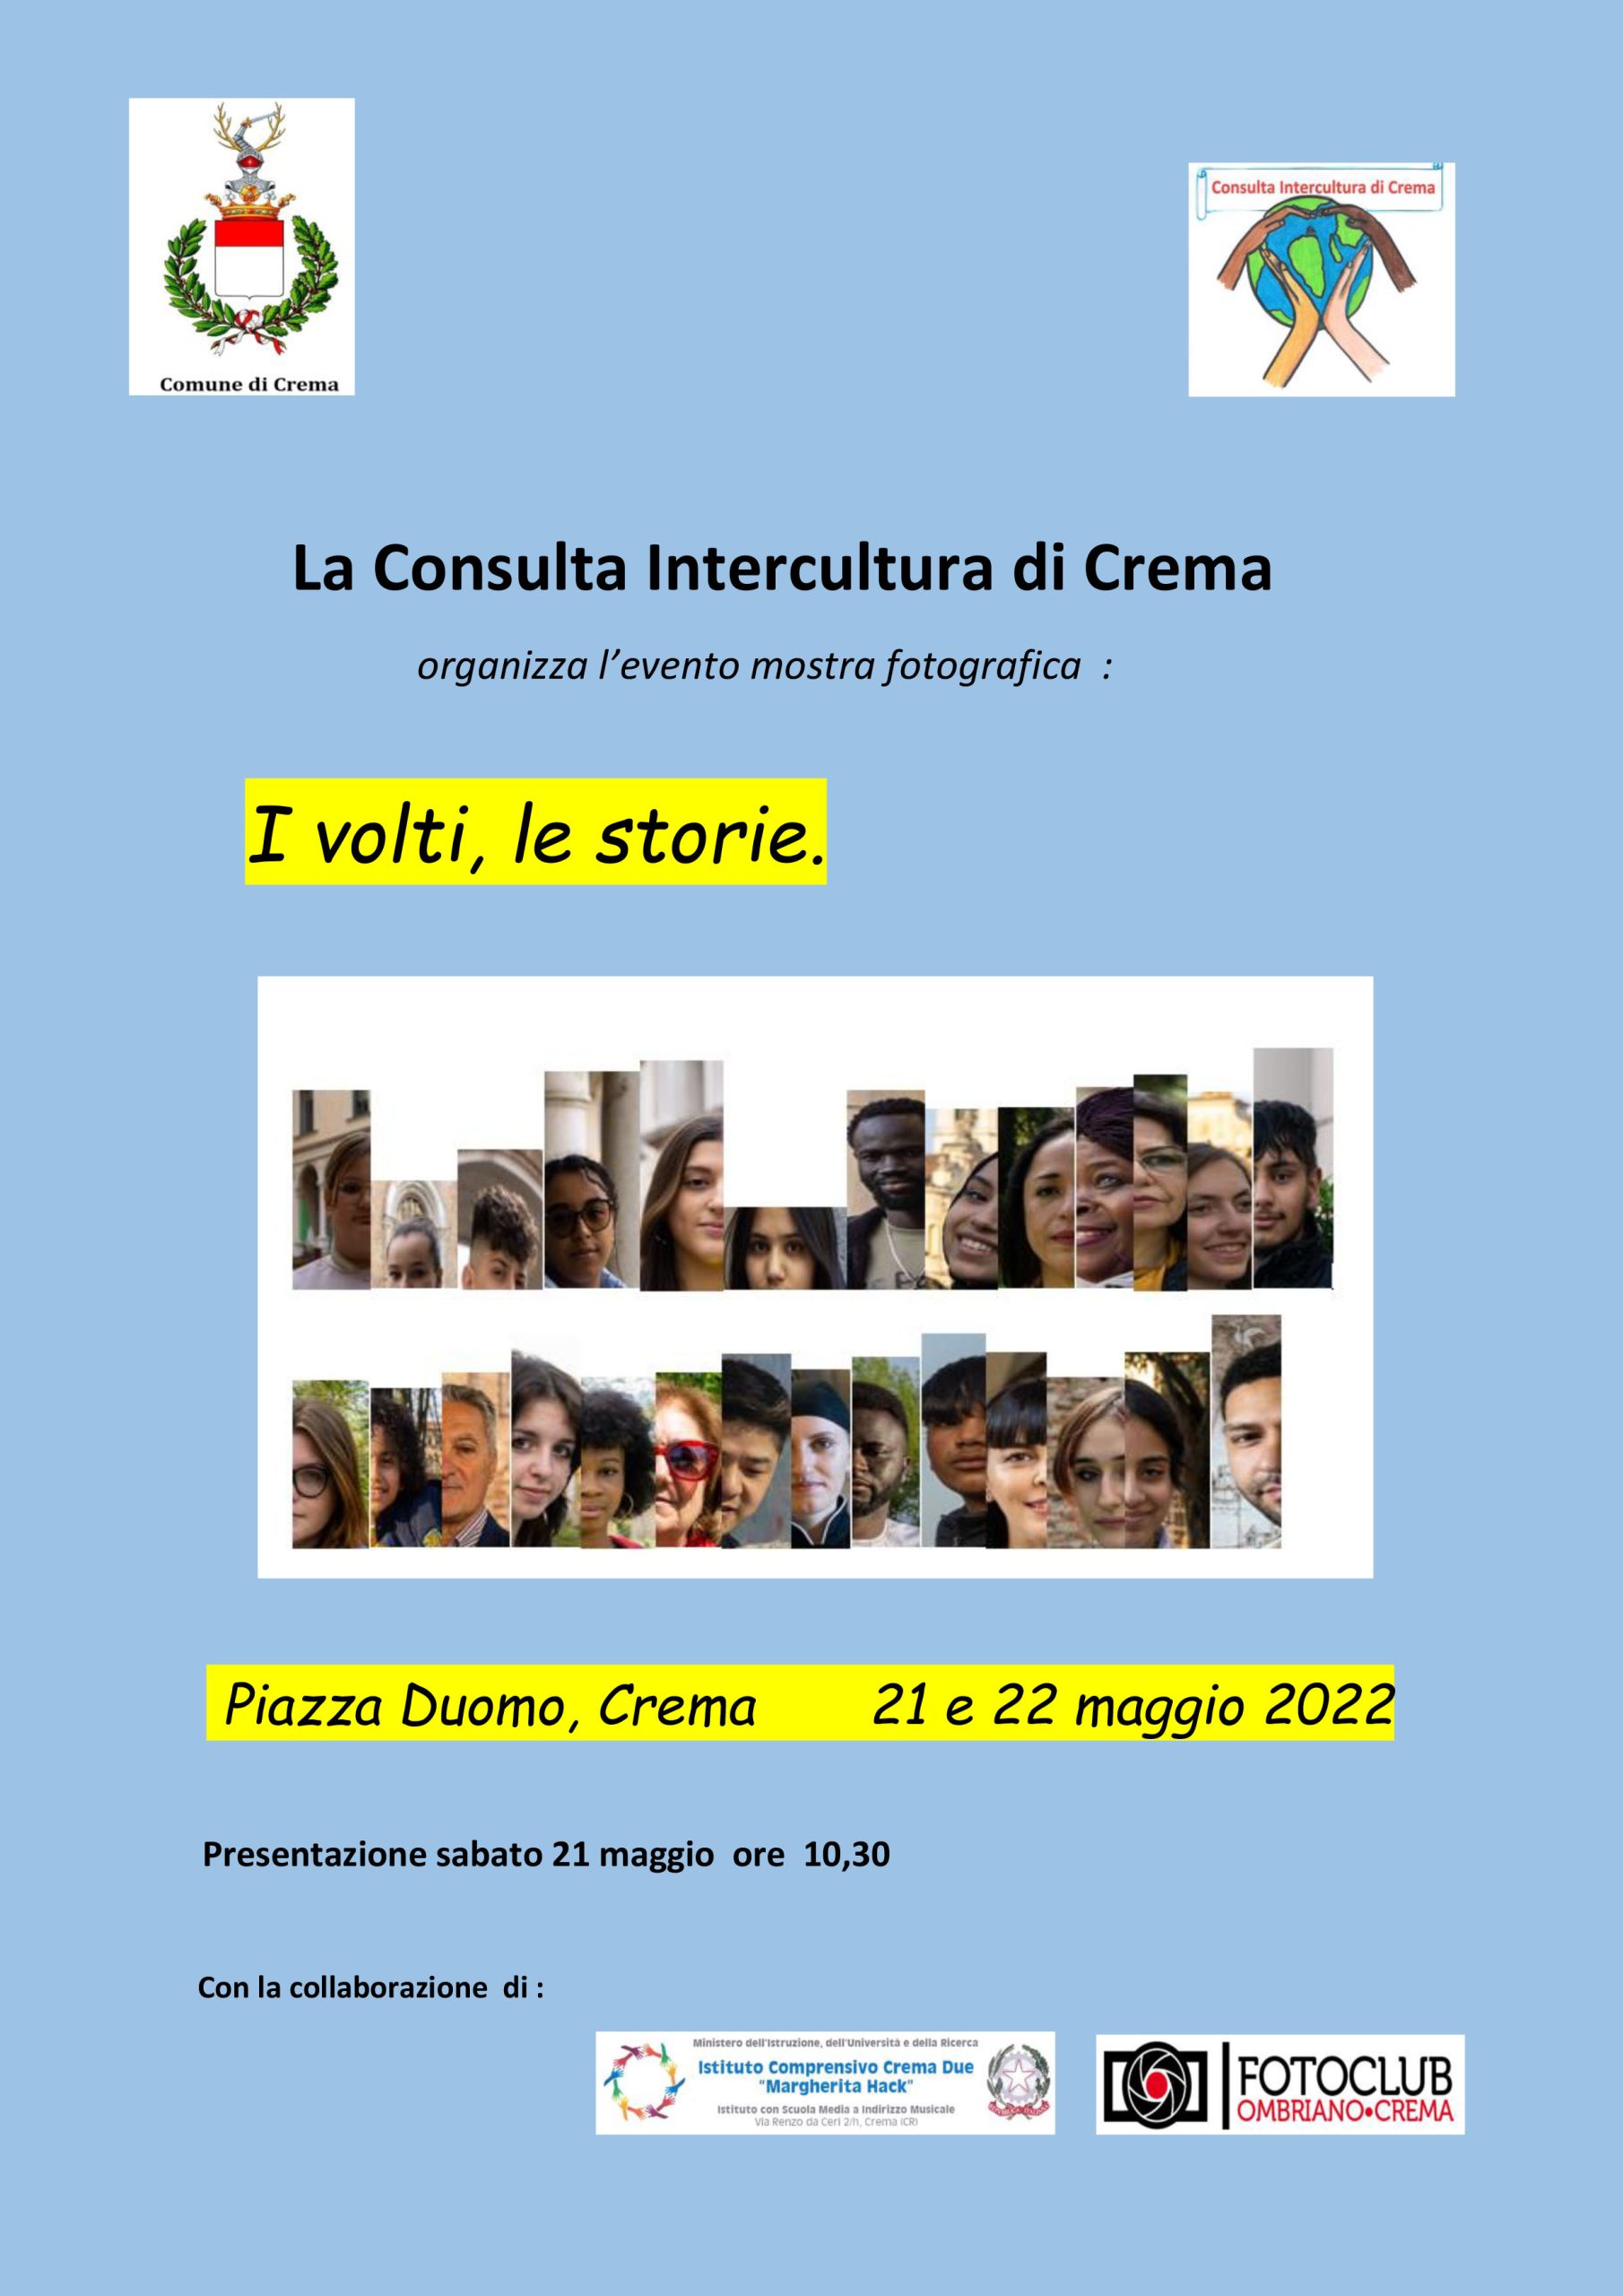 I volti e le storie, la Consulta Intercultura in piazza Duomo nel weekend